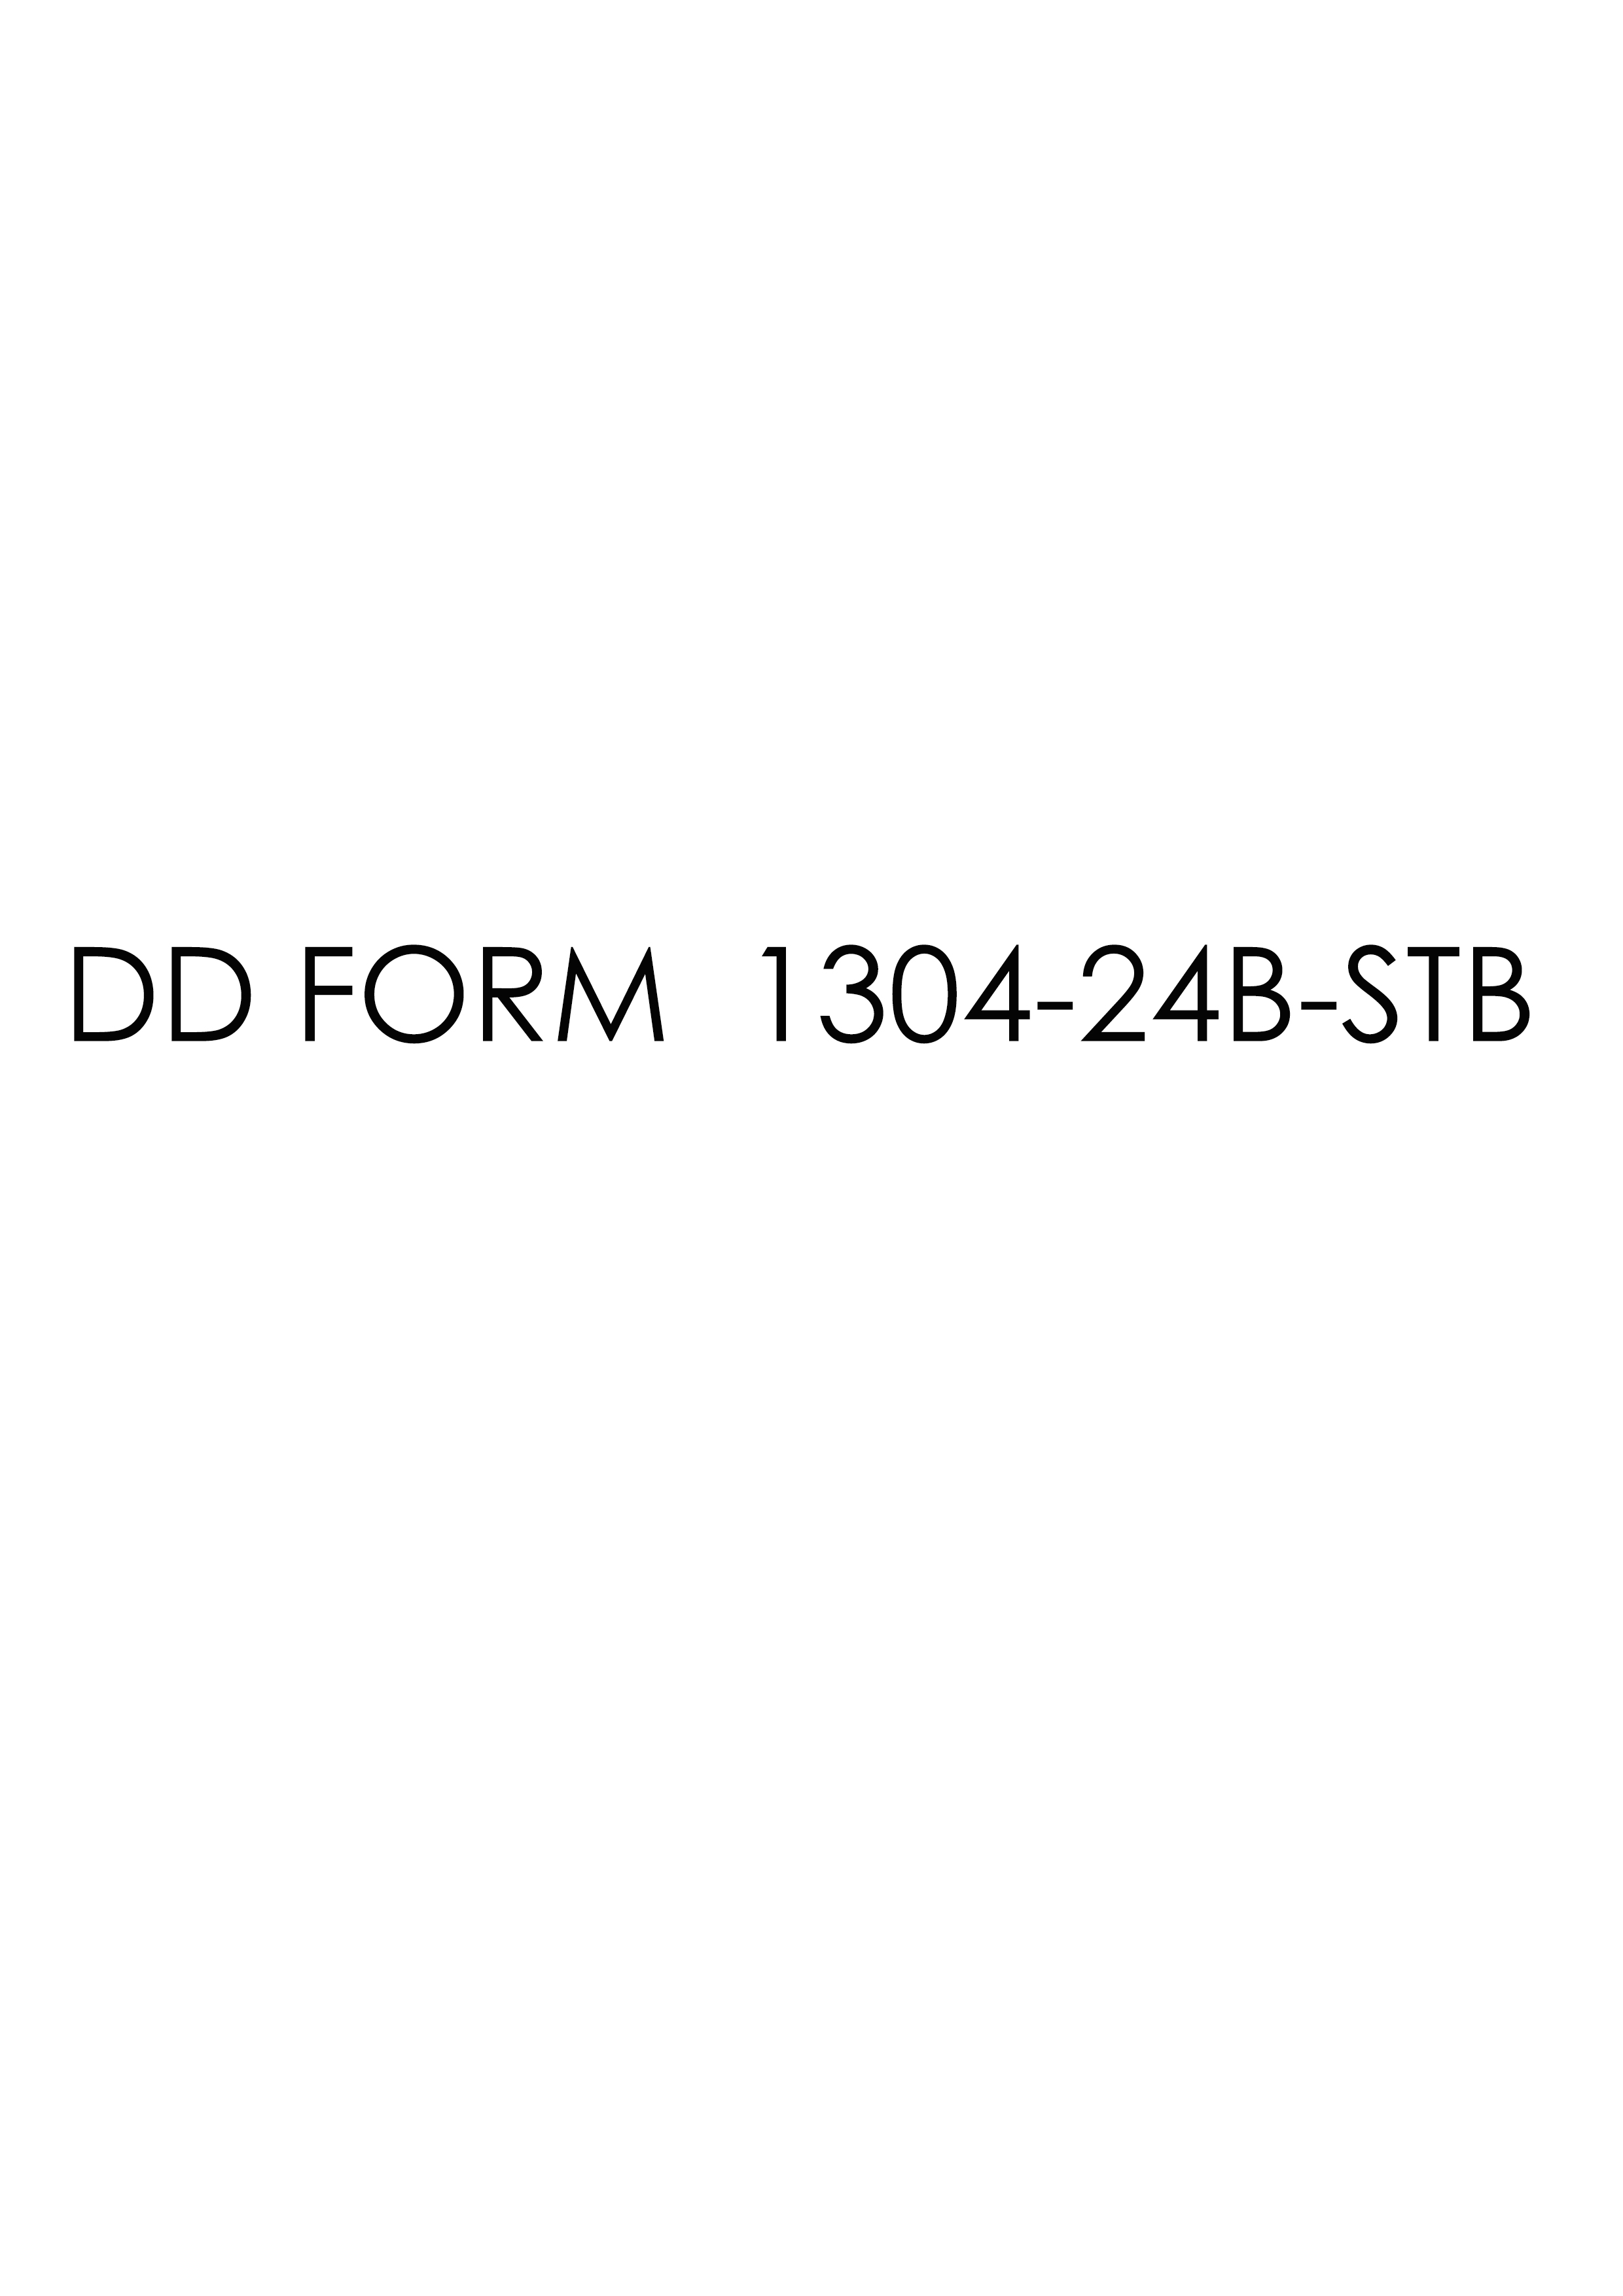 Download dd 1304-24B-STB Form